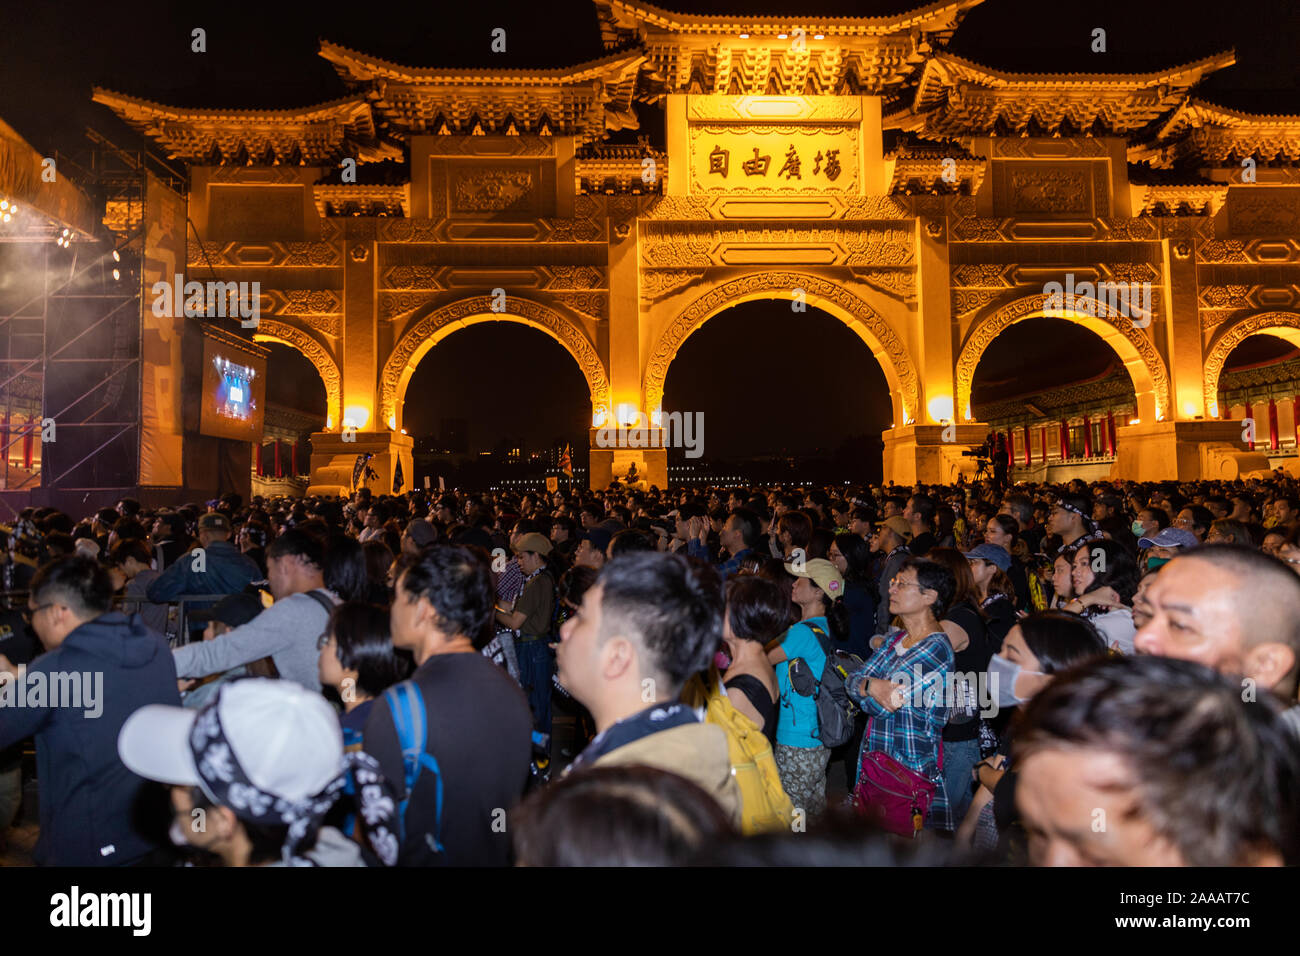 Am 17. November 2019 Tausende von Taiwan zu einem Konzert zur Unterstützung der Hong Kong pro Demokratie/Freiheit Demonstranten am Platz der Freiheit in Taipeh. Eine Reihe von berühmten Taiwanesischen Pop Stars gespielt. Stockfoto